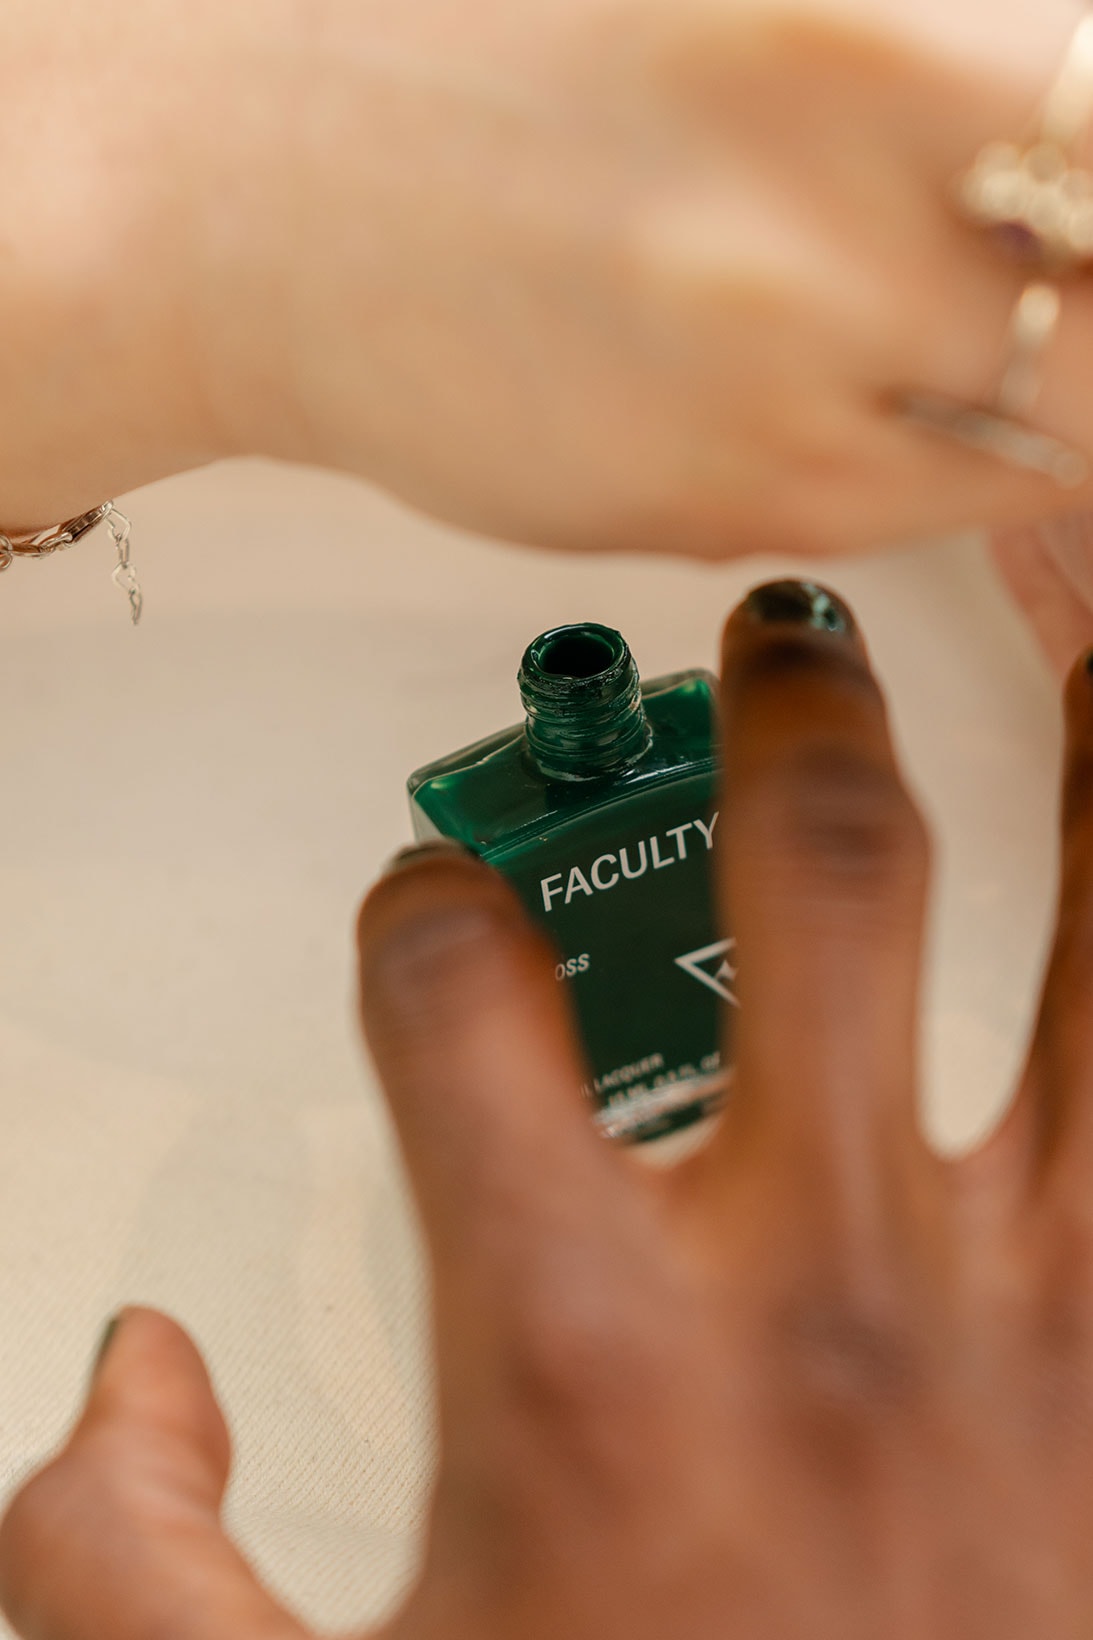 faculty mens grooming nail polish beauty diversity inclusivity interview umar elbably fenton jagdeo